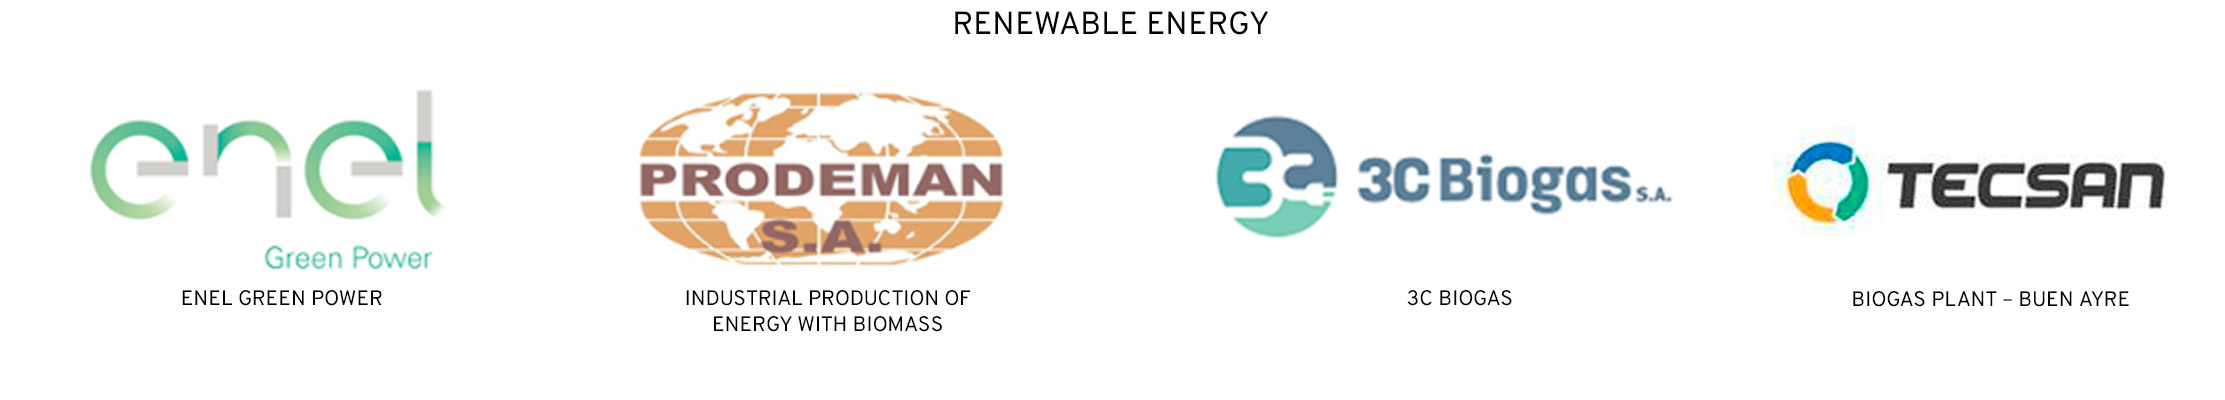 logos-renovables-2